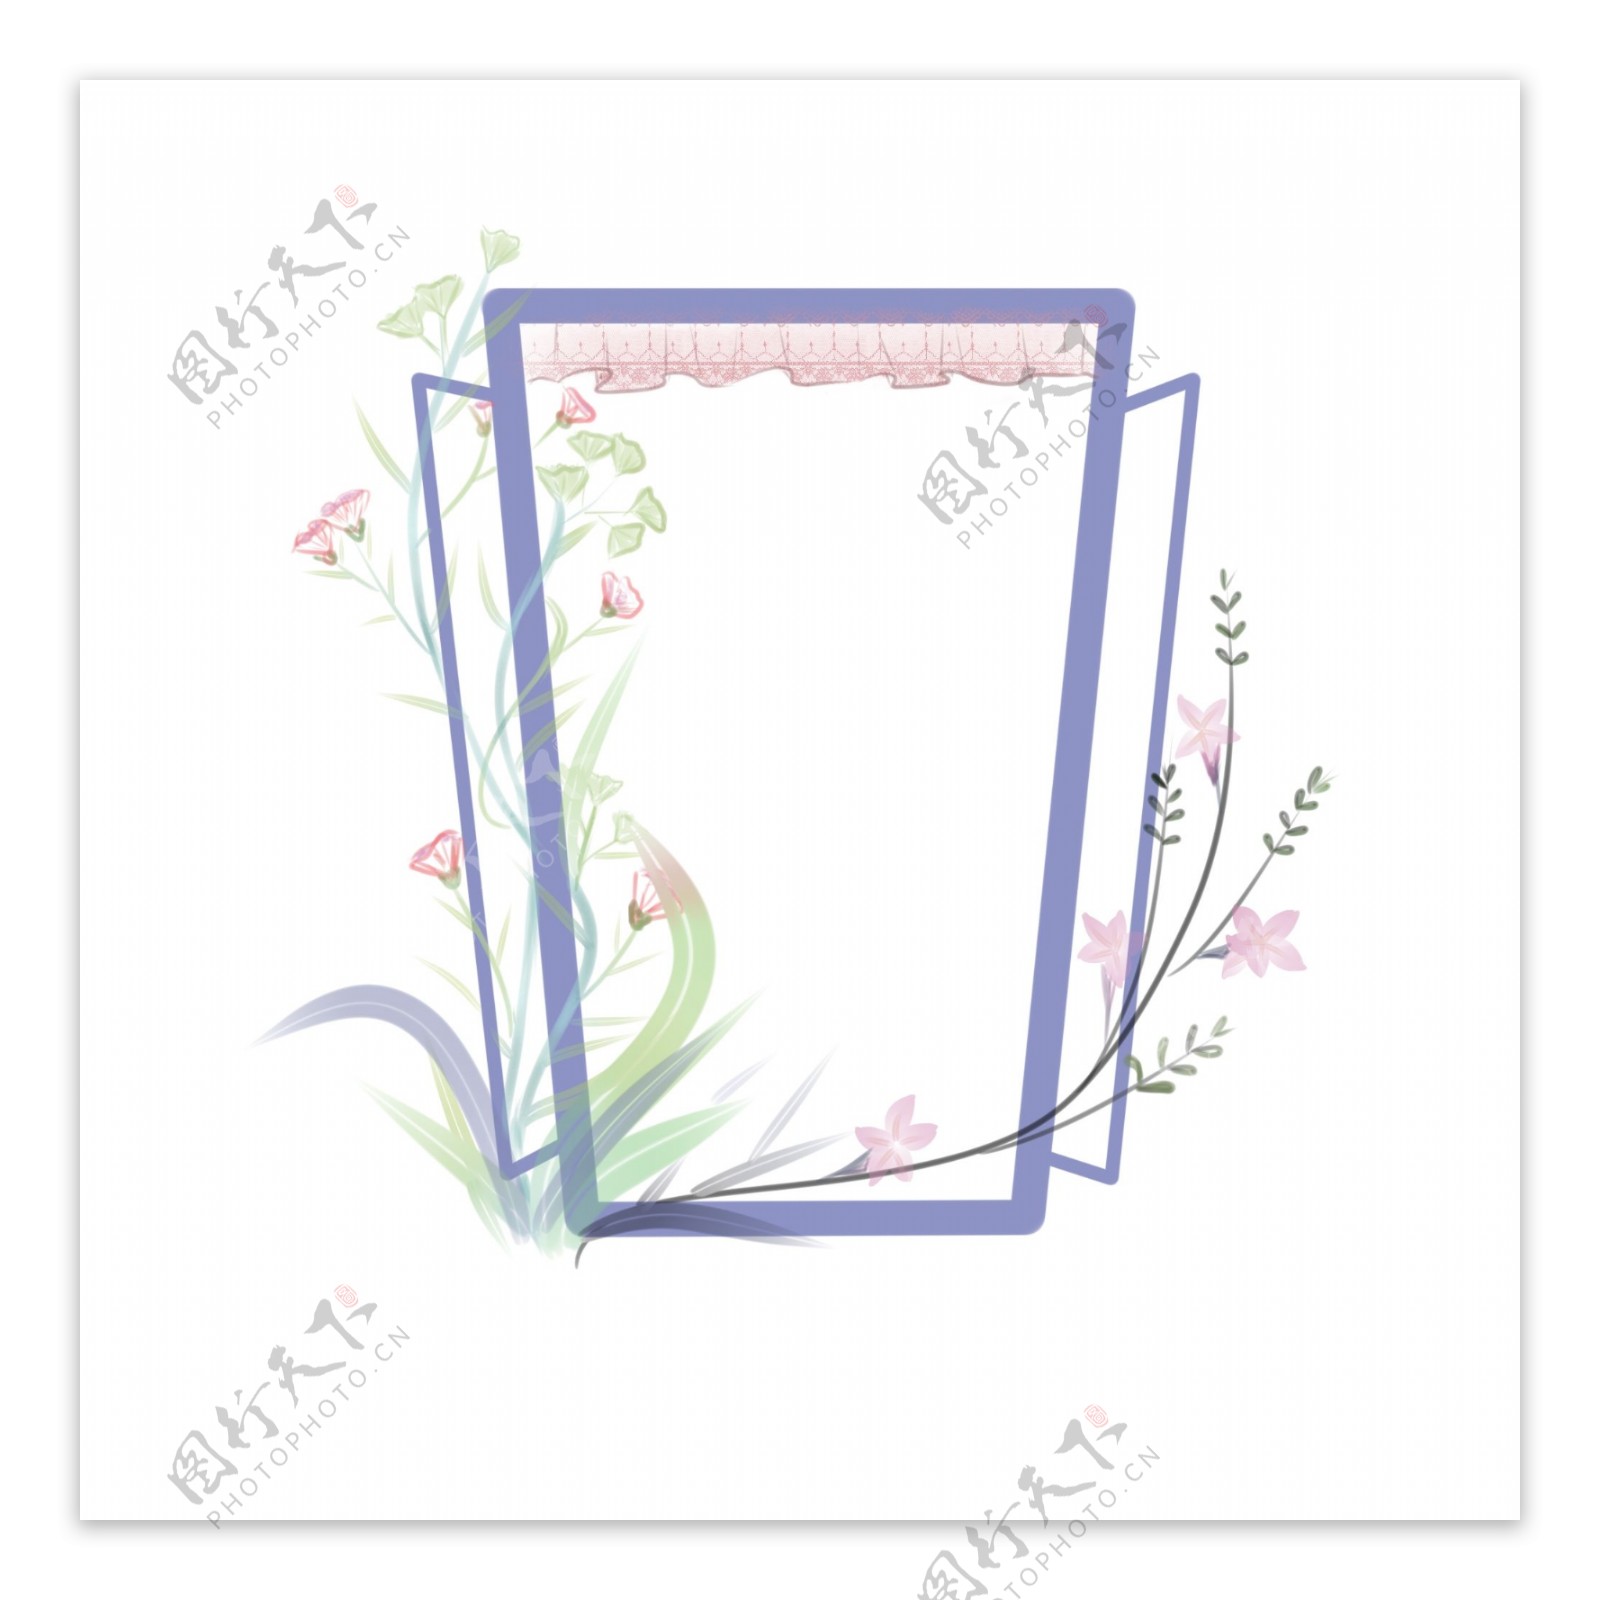 边框窗户清新植物花卉手绘免抠唯美浪漫元素